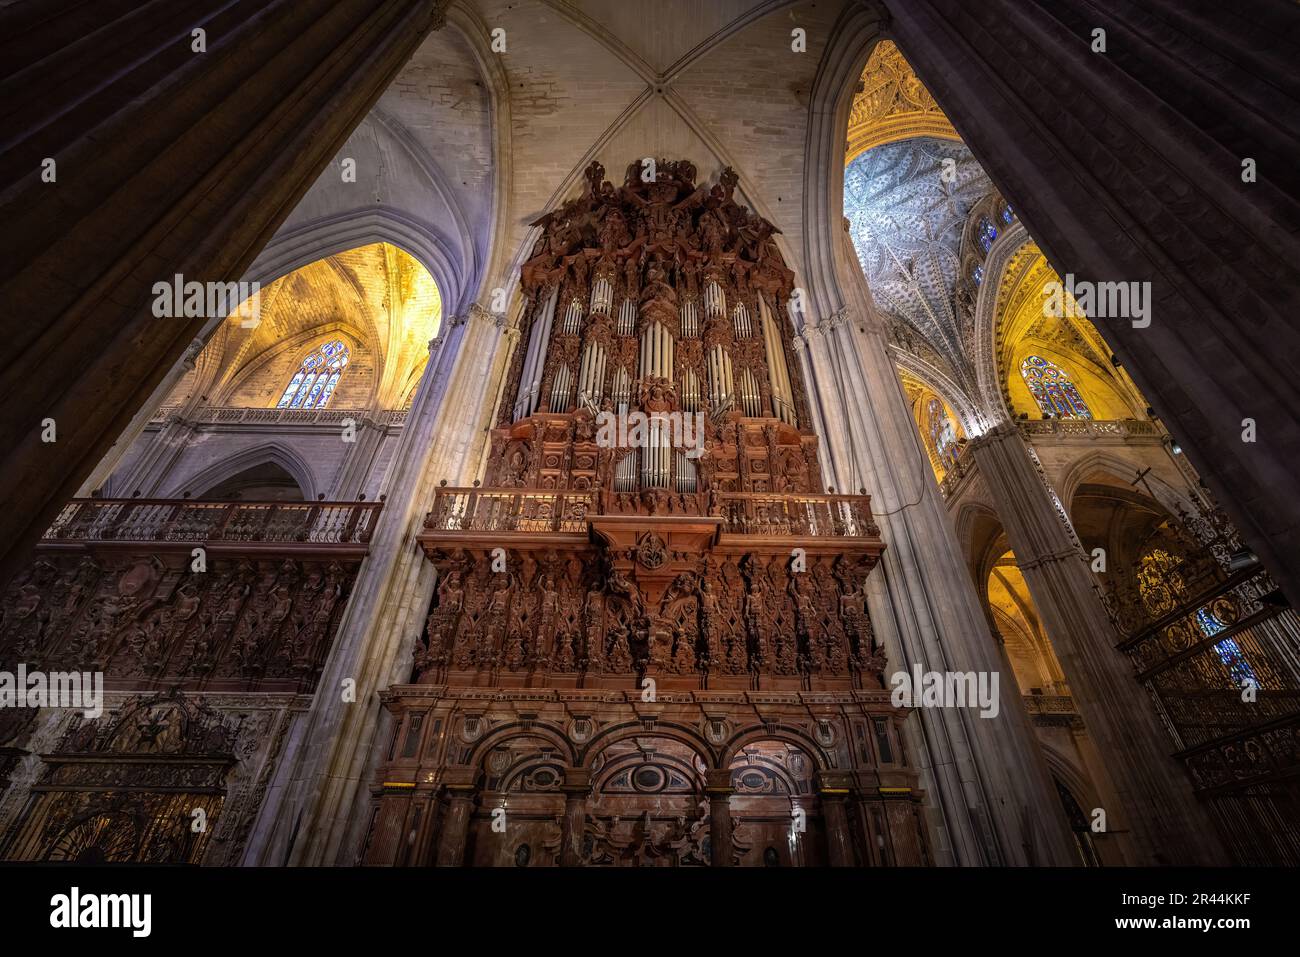 Pfeifenorgel im Inneren der Kathedrale von Sevilla - Sevilla, Andalusien, Spanien Stockfoto